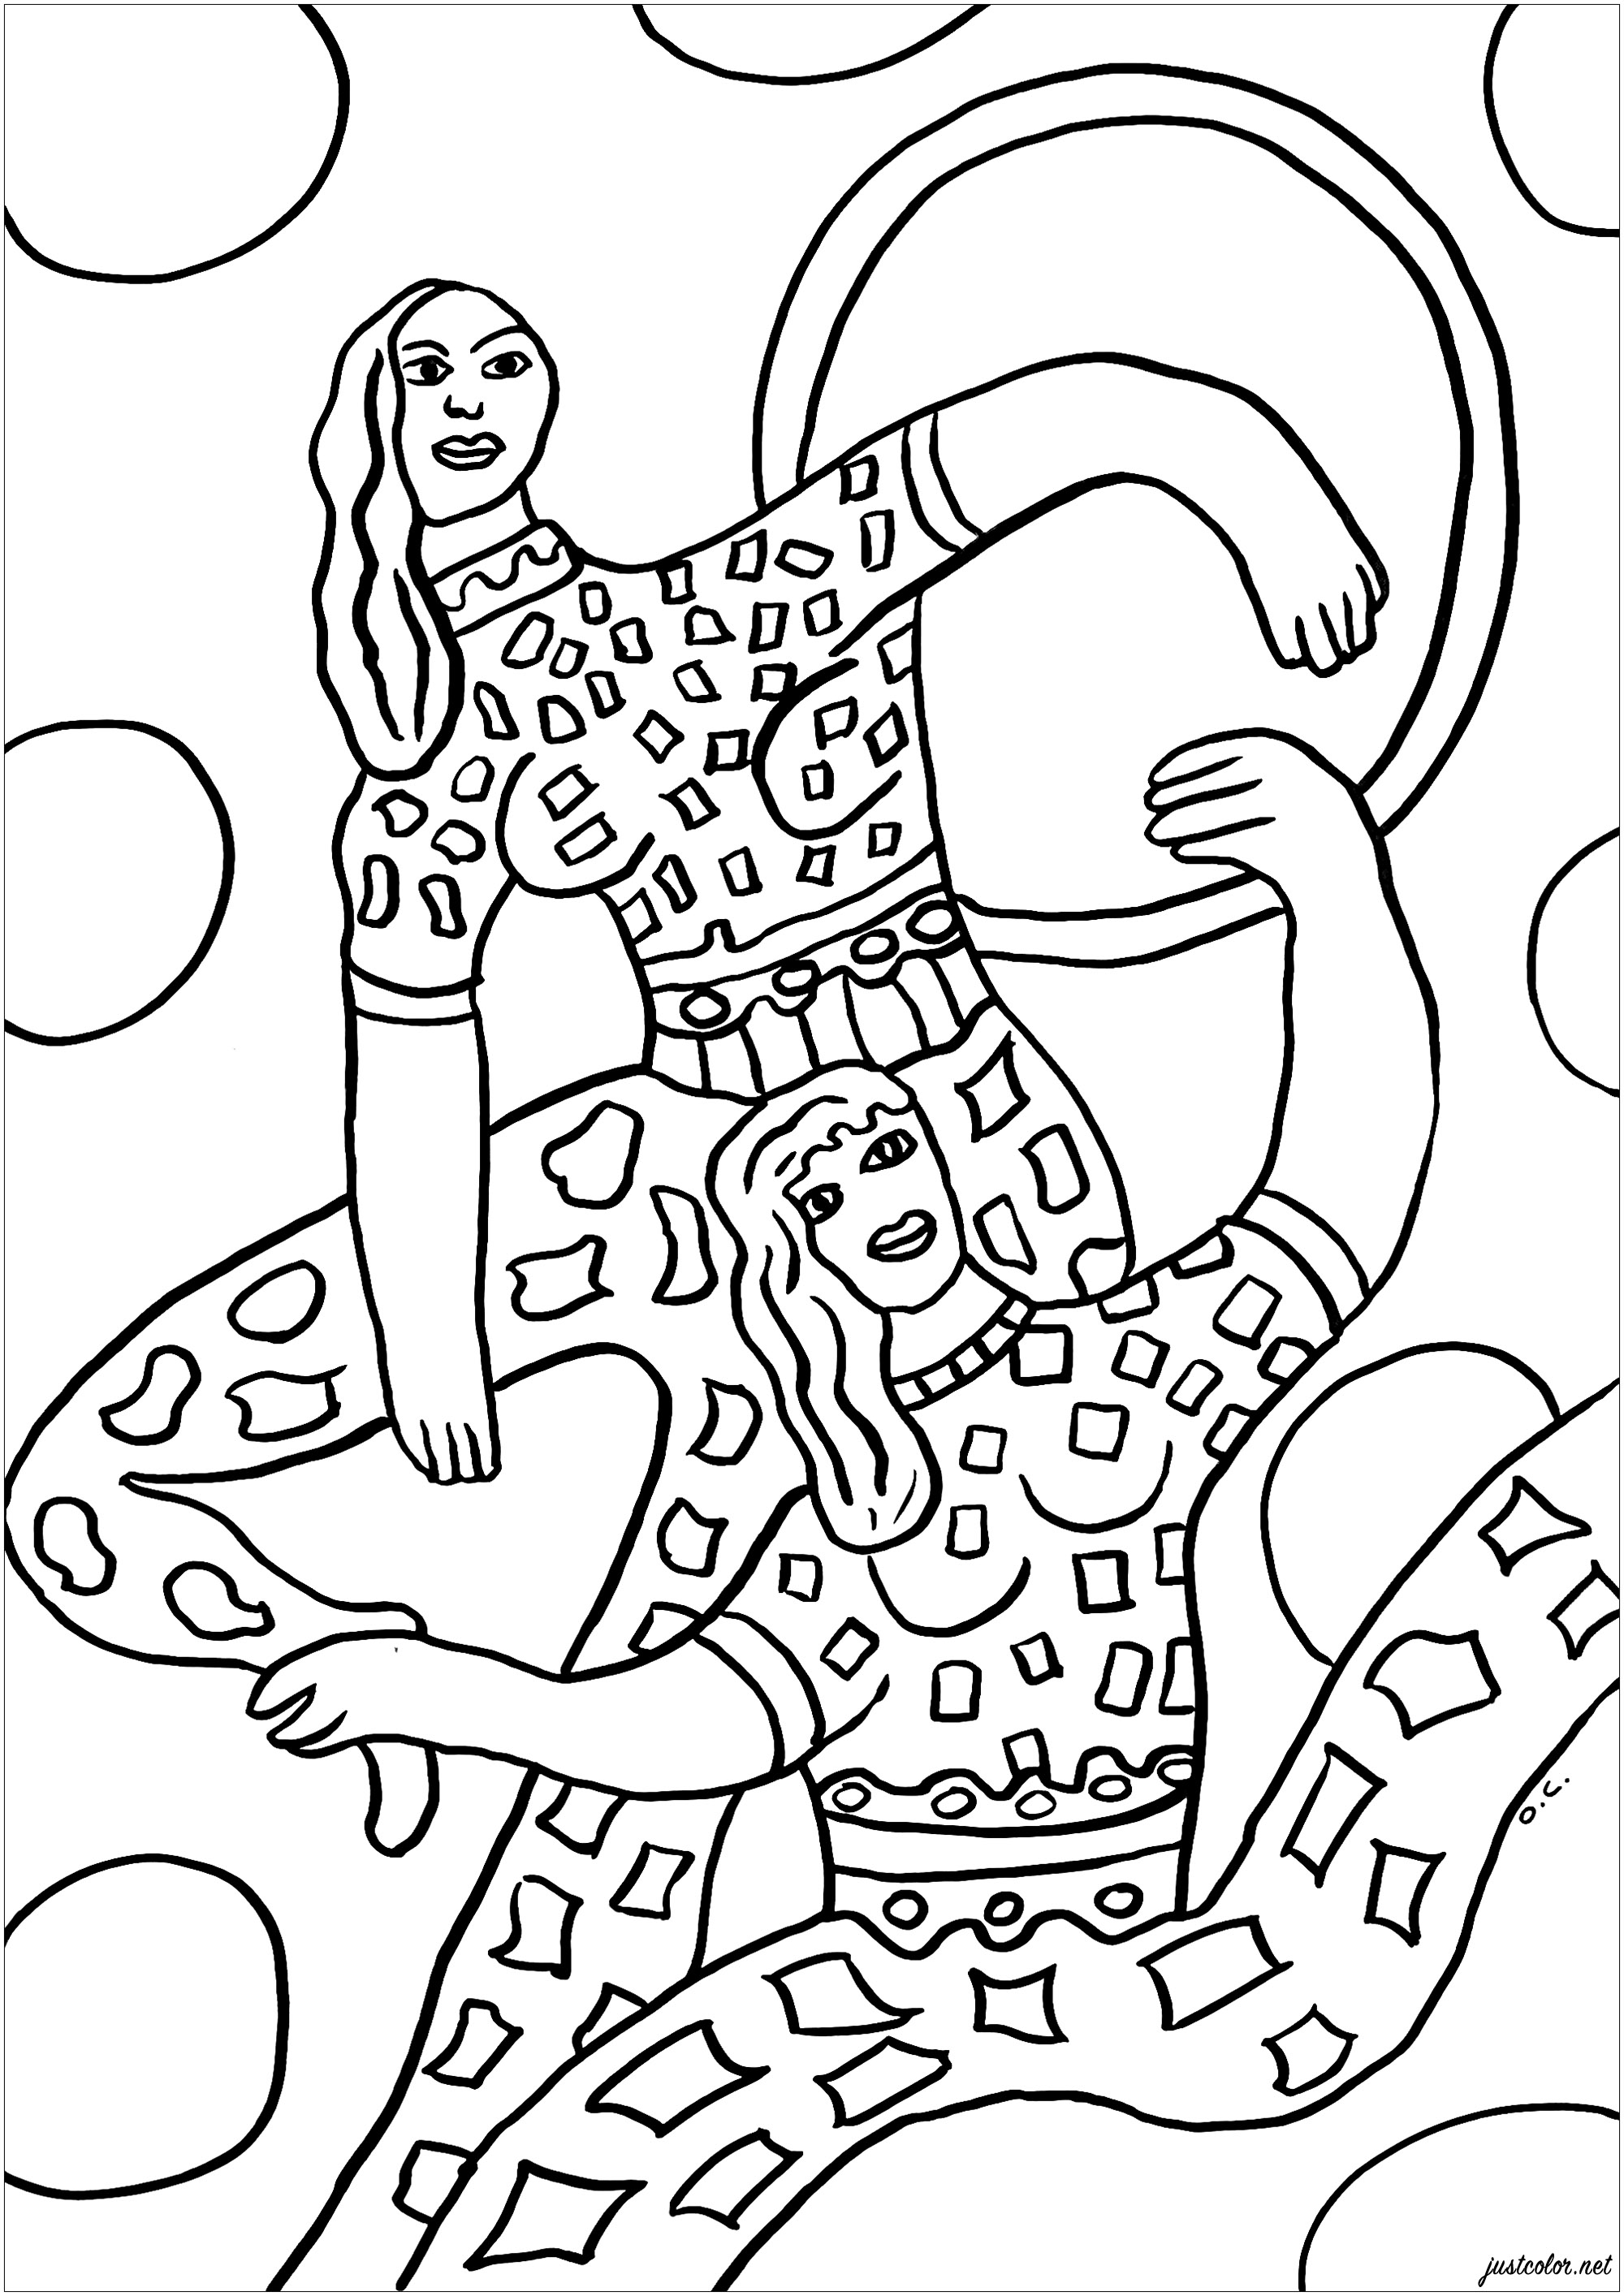 Coloriage créé à partir de l'illustration Cirque (1850) par Fernand Léger. Illustration faisant partie du livre illustré 'Cirque' (Paris, Tériade, 1950). Des détails ont été ajoutés pour ajouter plus d'éléments à colorier. A voir au Musée Matisse du Cateau-Cambraisis (Nord, France)